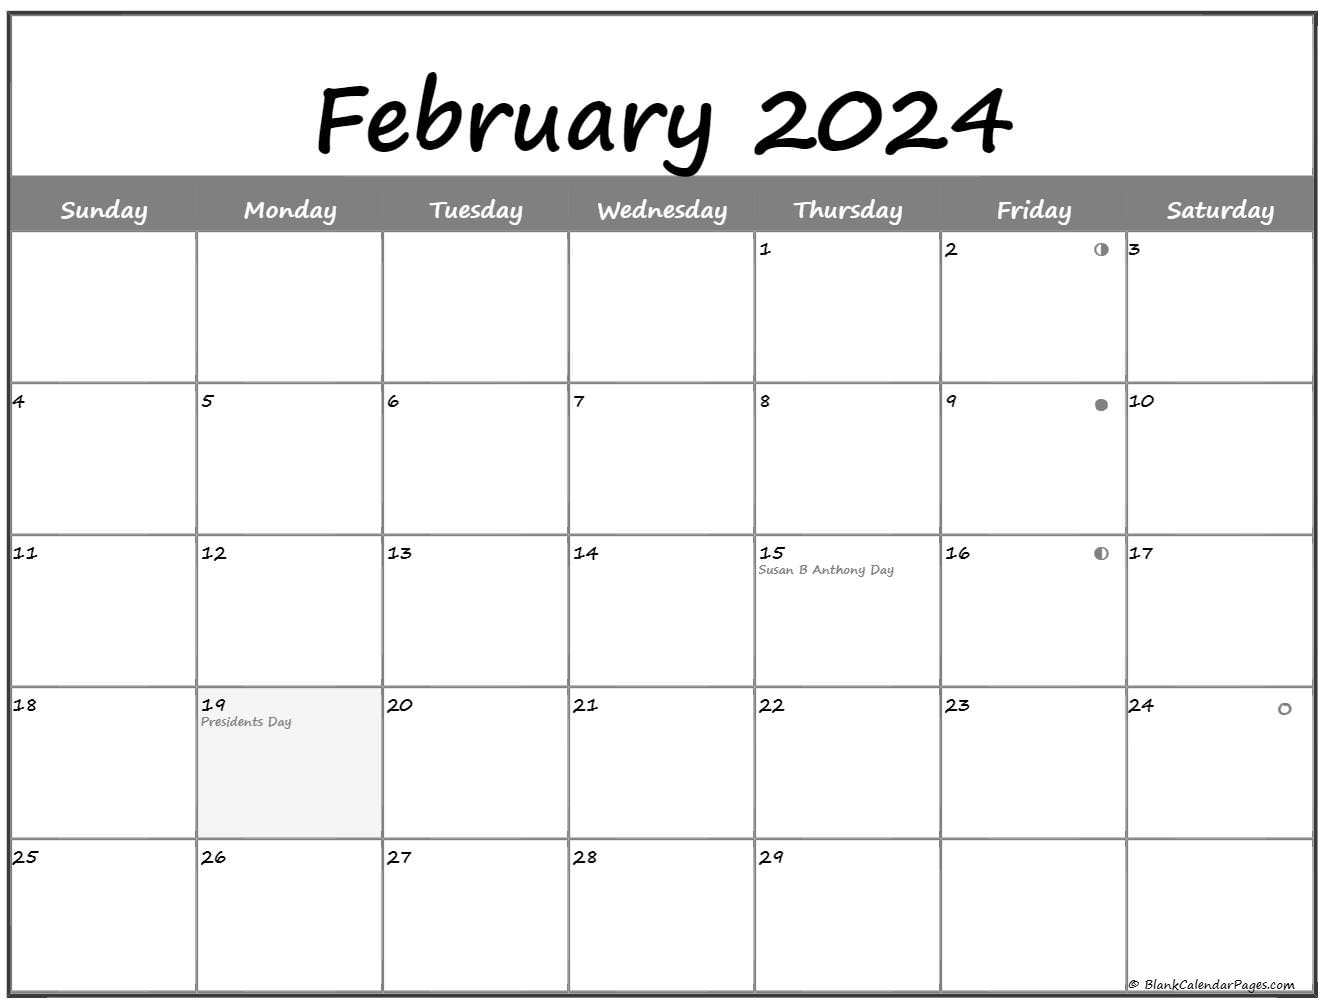 Moon Calendar February 2022 February 2022 Lunar Calendar | Moon Phase Calendar